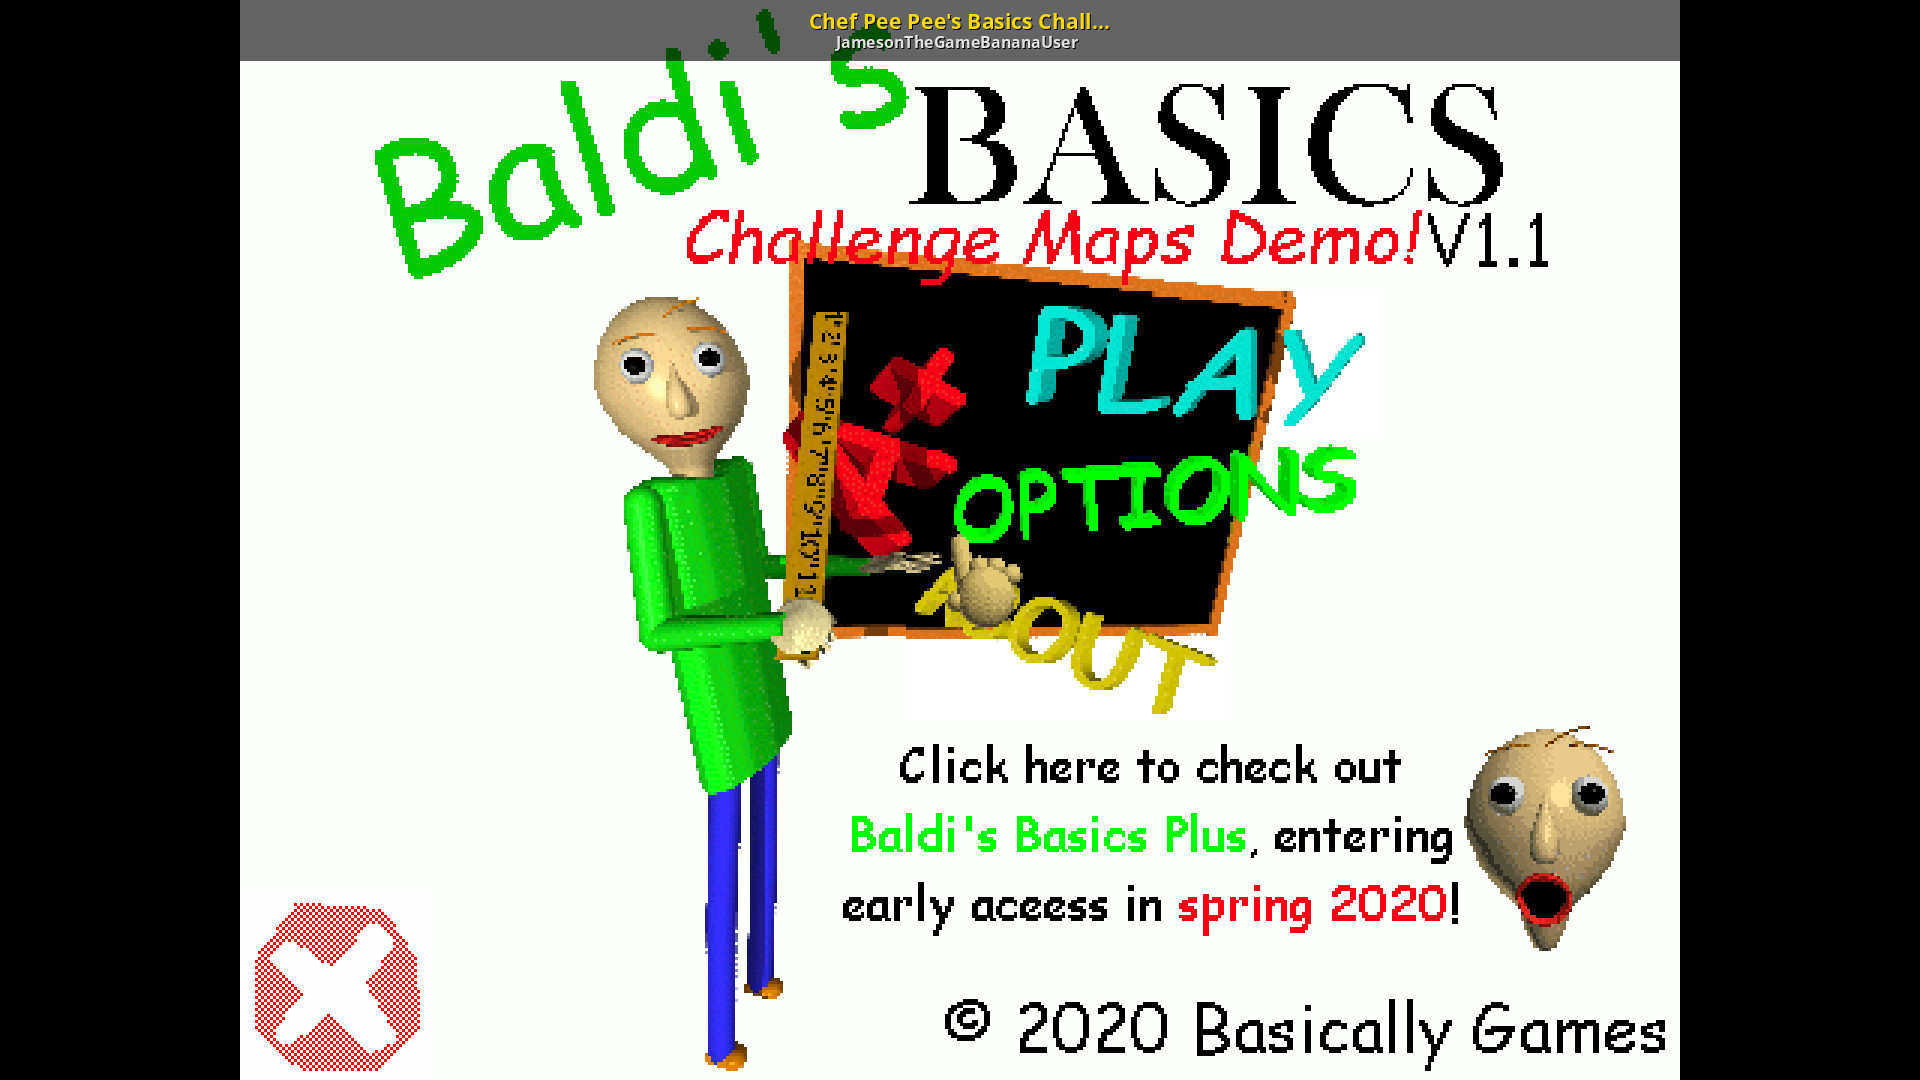 Baldis basics demo game